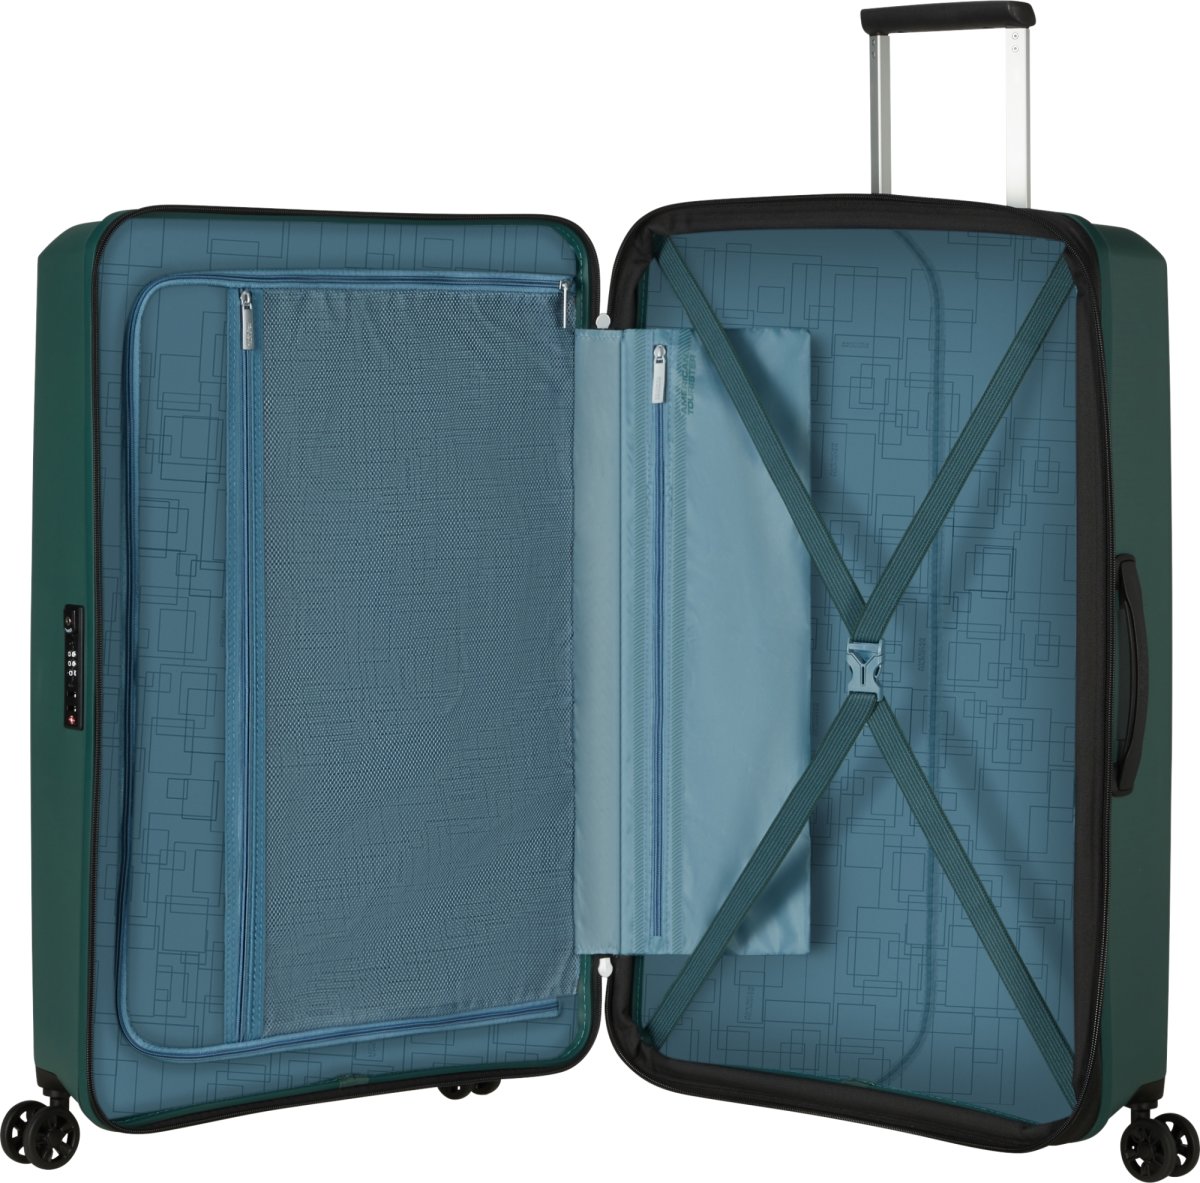 American Tourister resväska | 77 cm | Grön